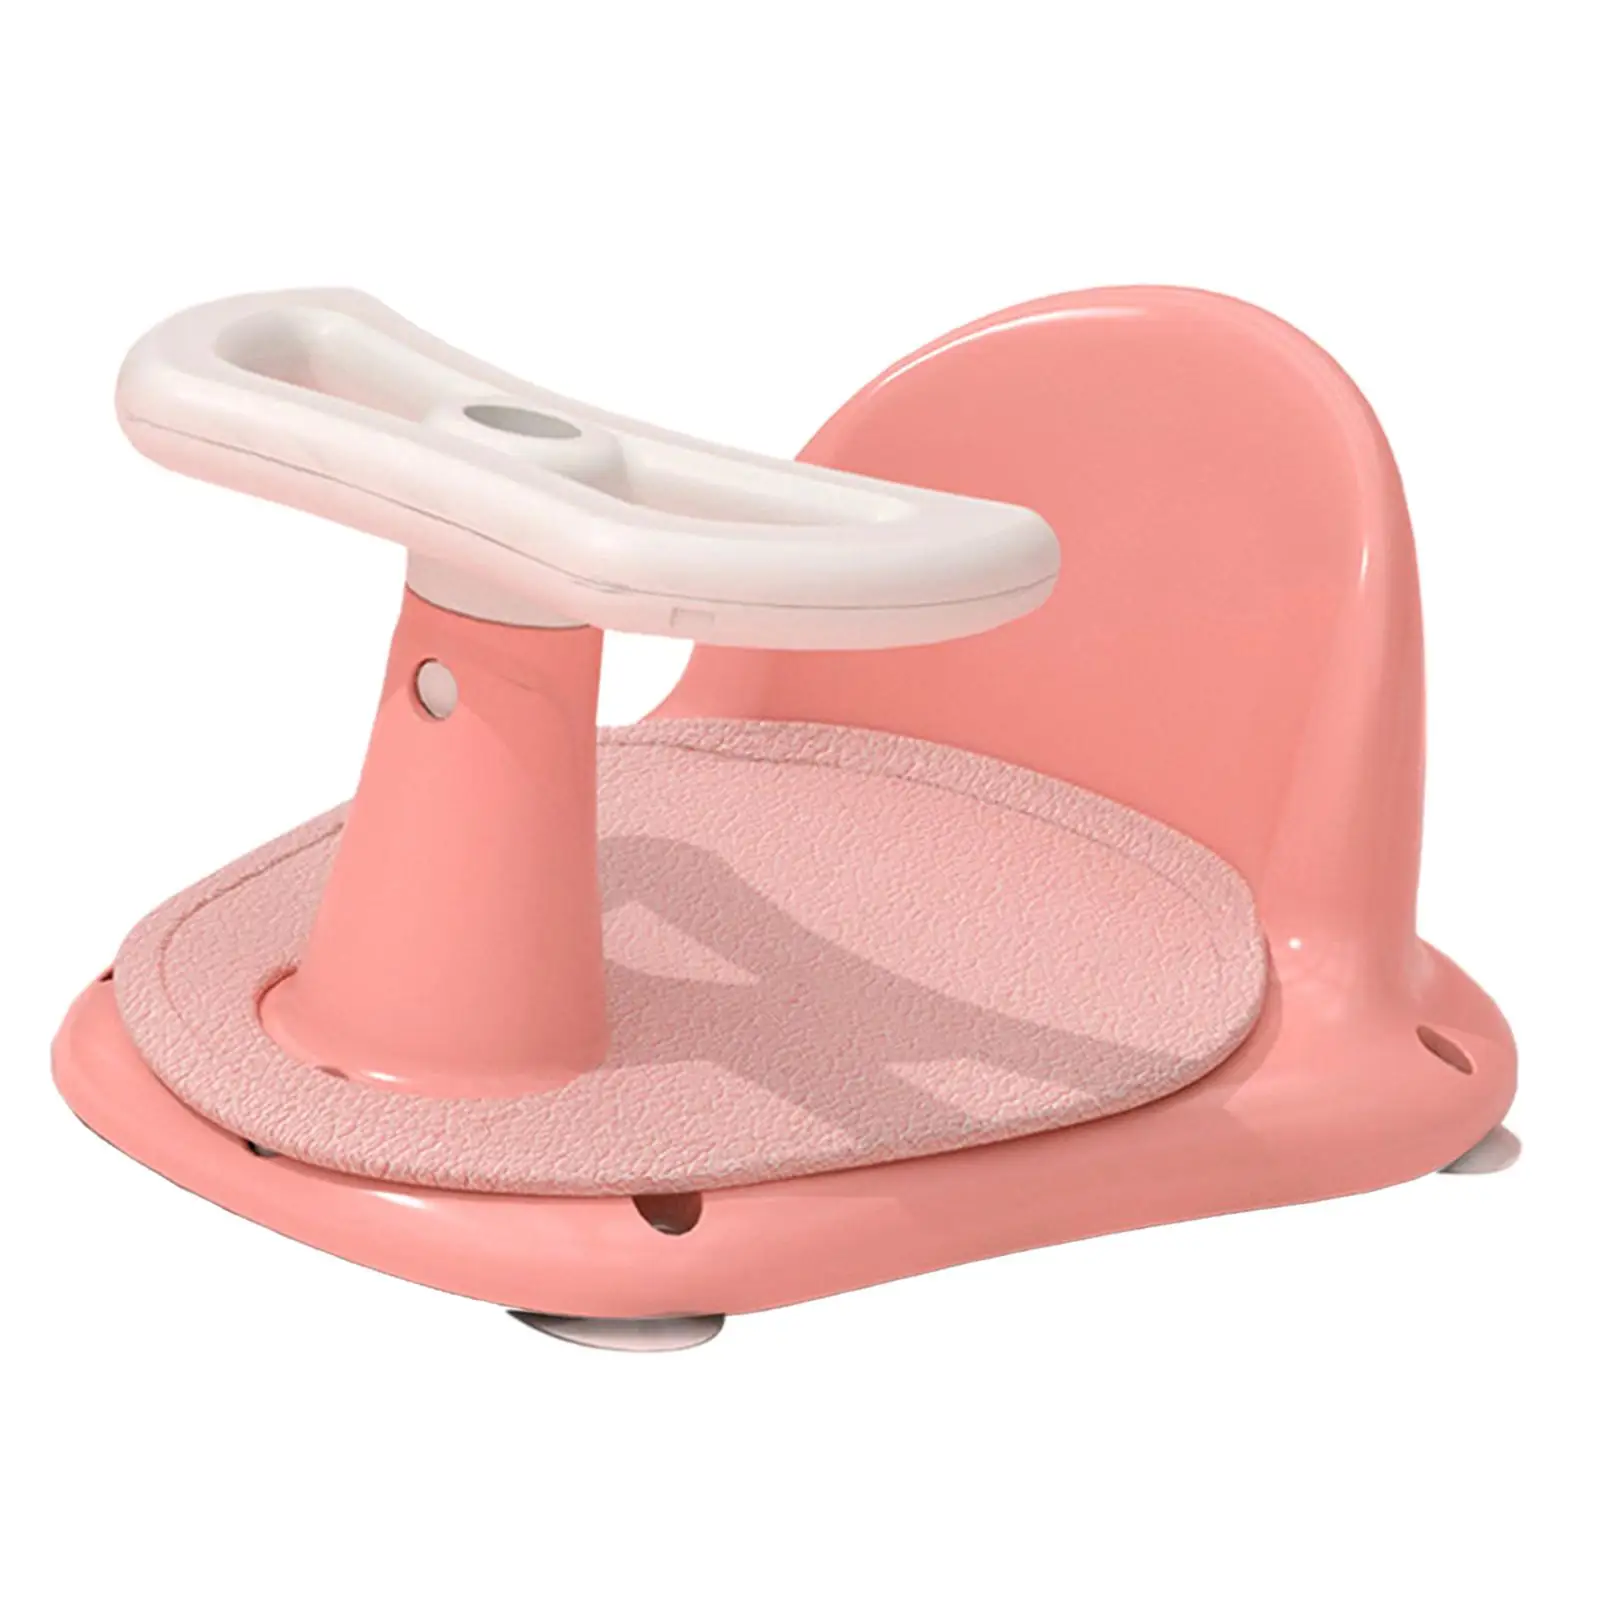 Shower Bath Seat, Bathtub Seat with Non-slip Mat, Bath Chair Bathroom Tub Chair, Suction Cup for Newborn